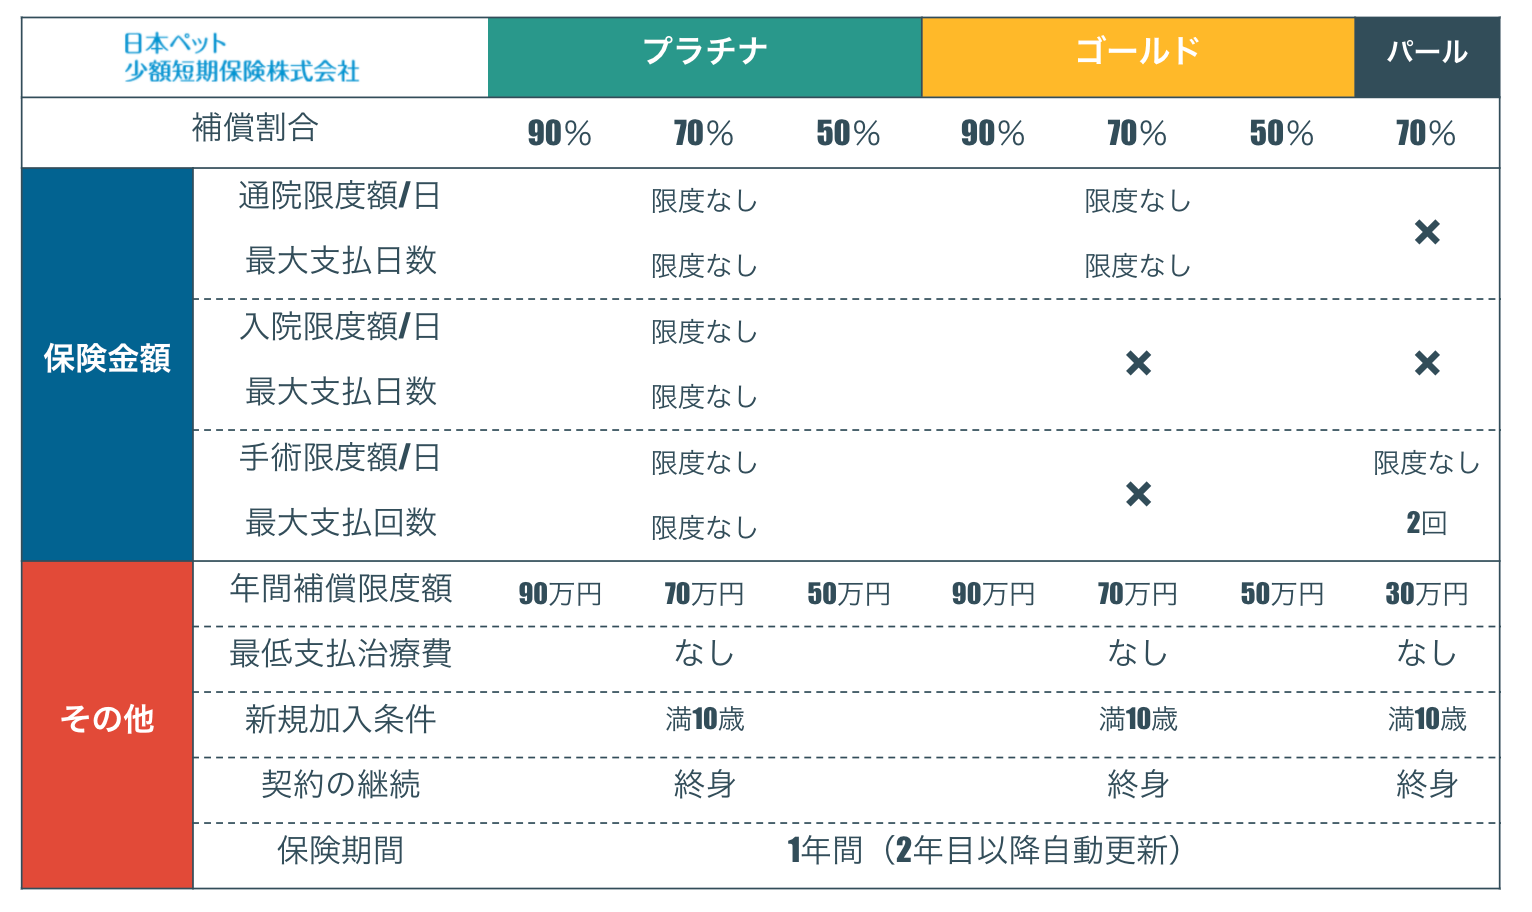 日本ペット少額短期保険の「いぬとねこの保険」の補償内容